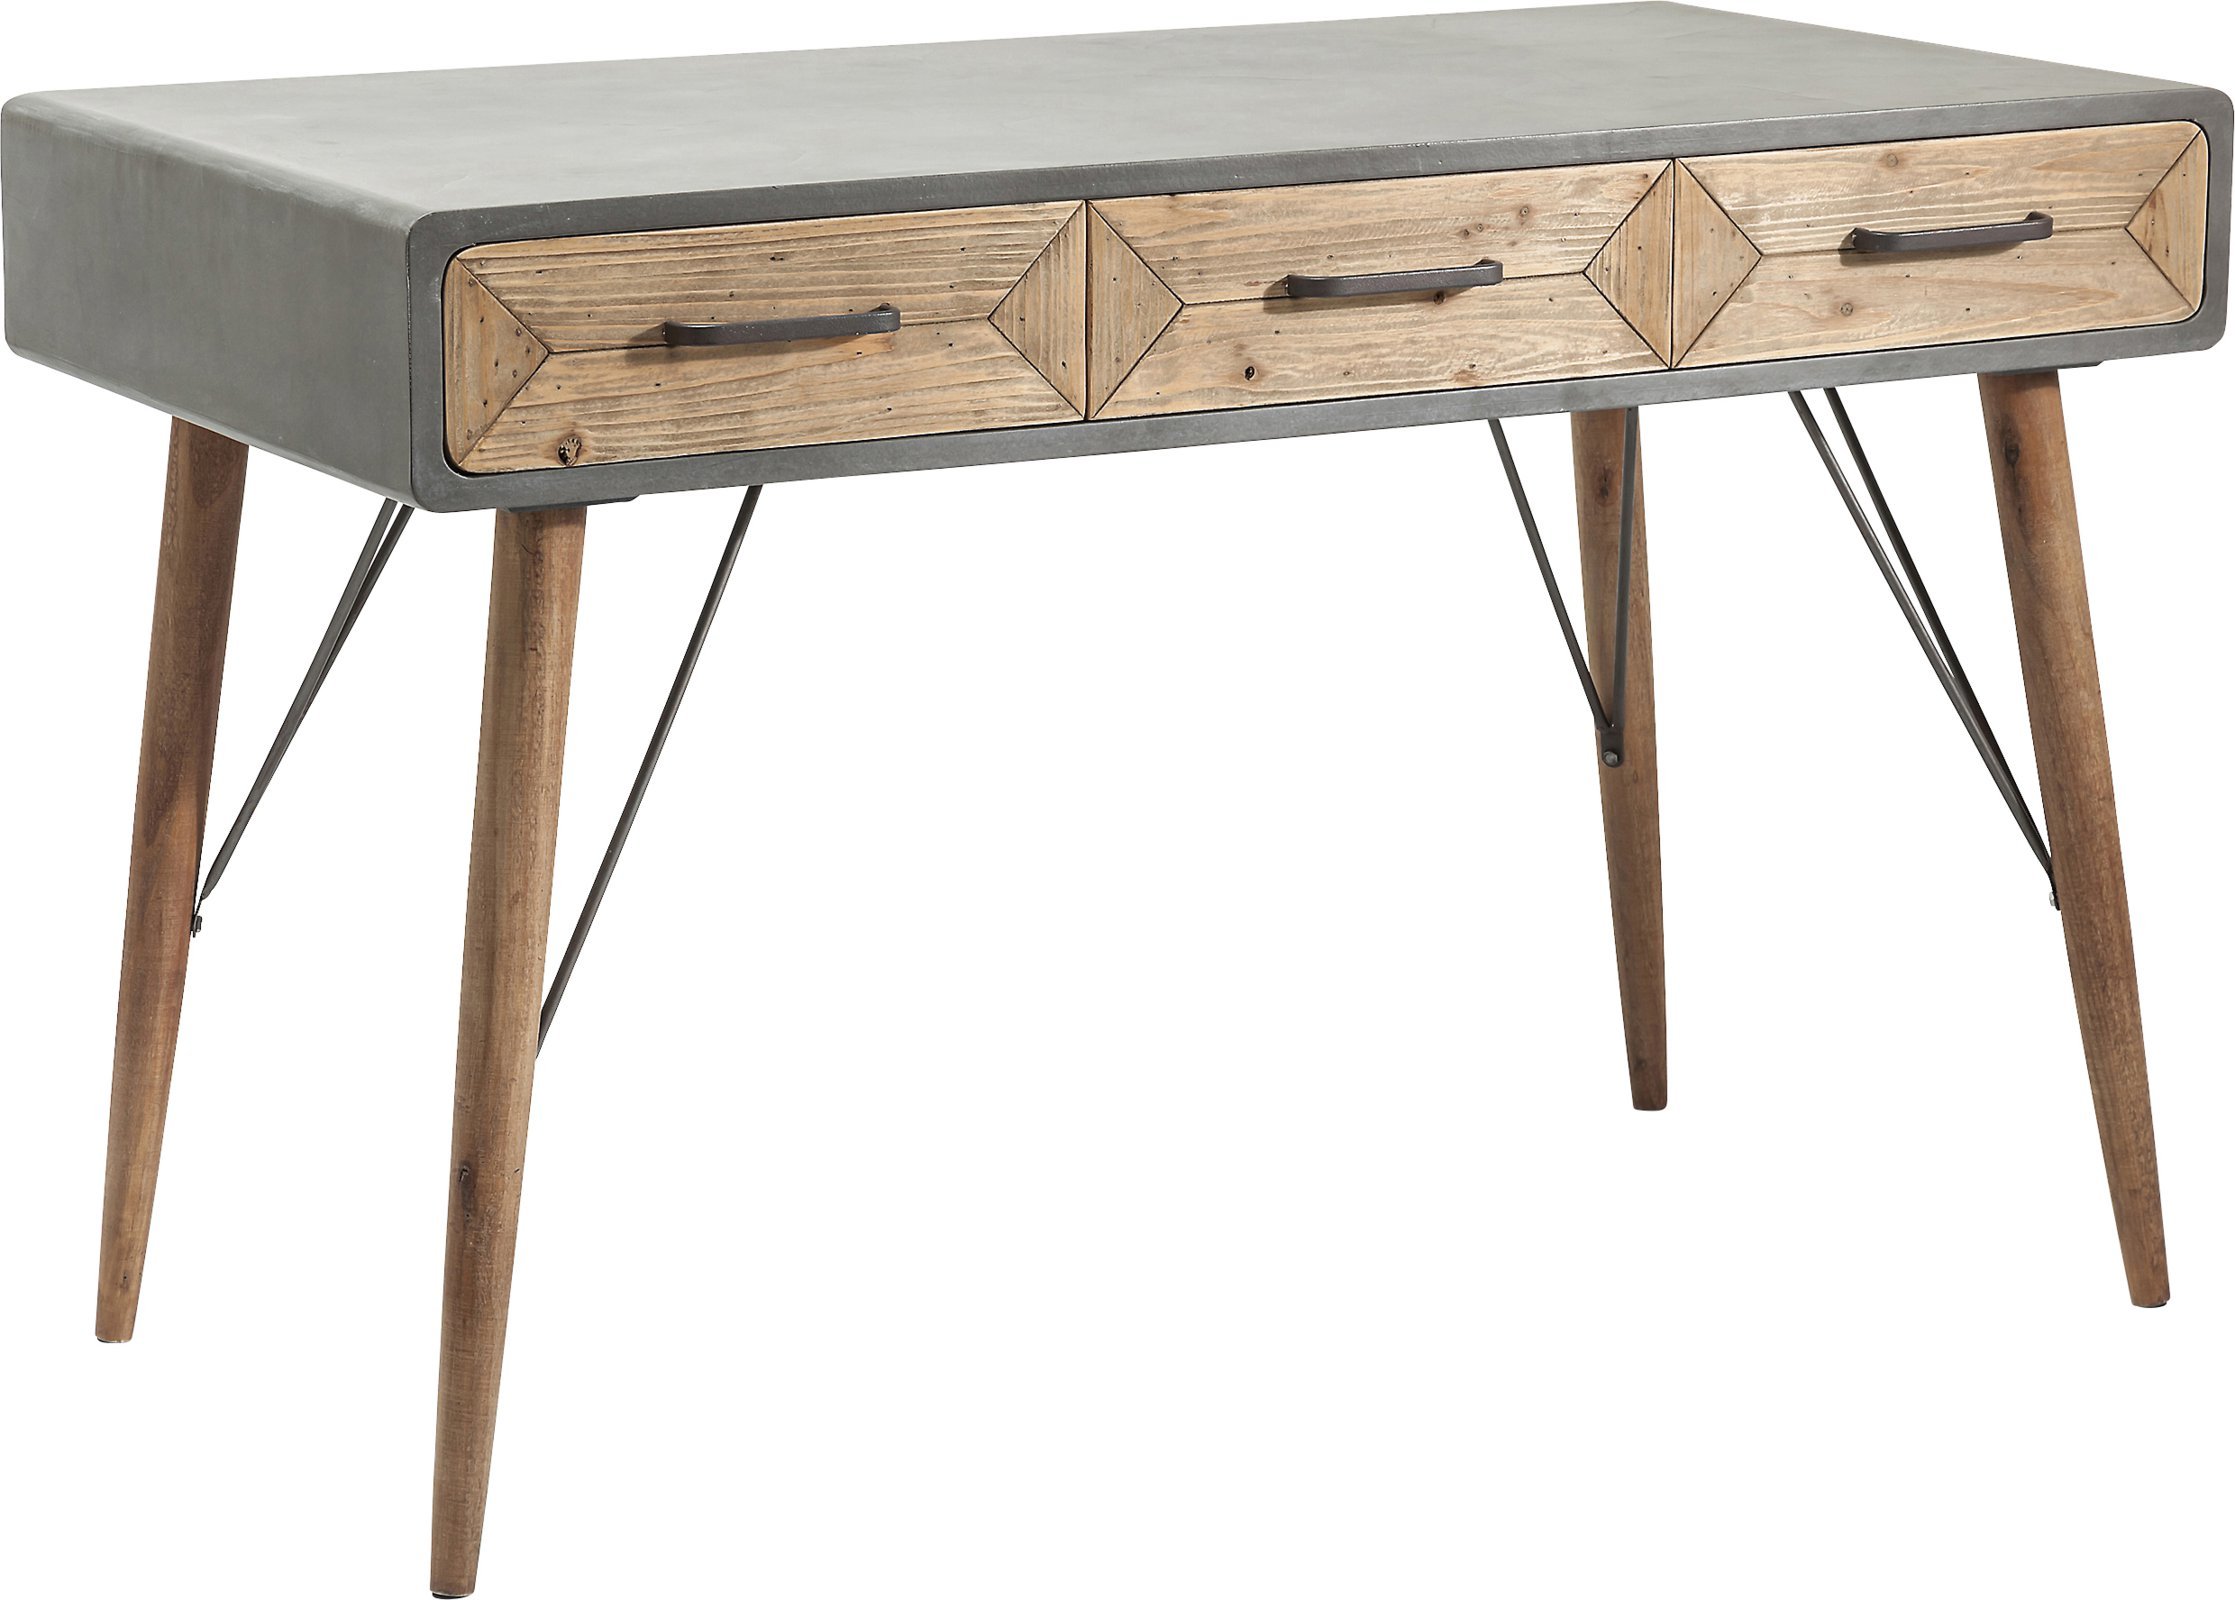 Kare Design Schreibtisch X Factory, 3 Schubladen, Industrial Style, Home Office Tisch, Bürotisch, Arbeitstisch,braun/grau, 120x60cm